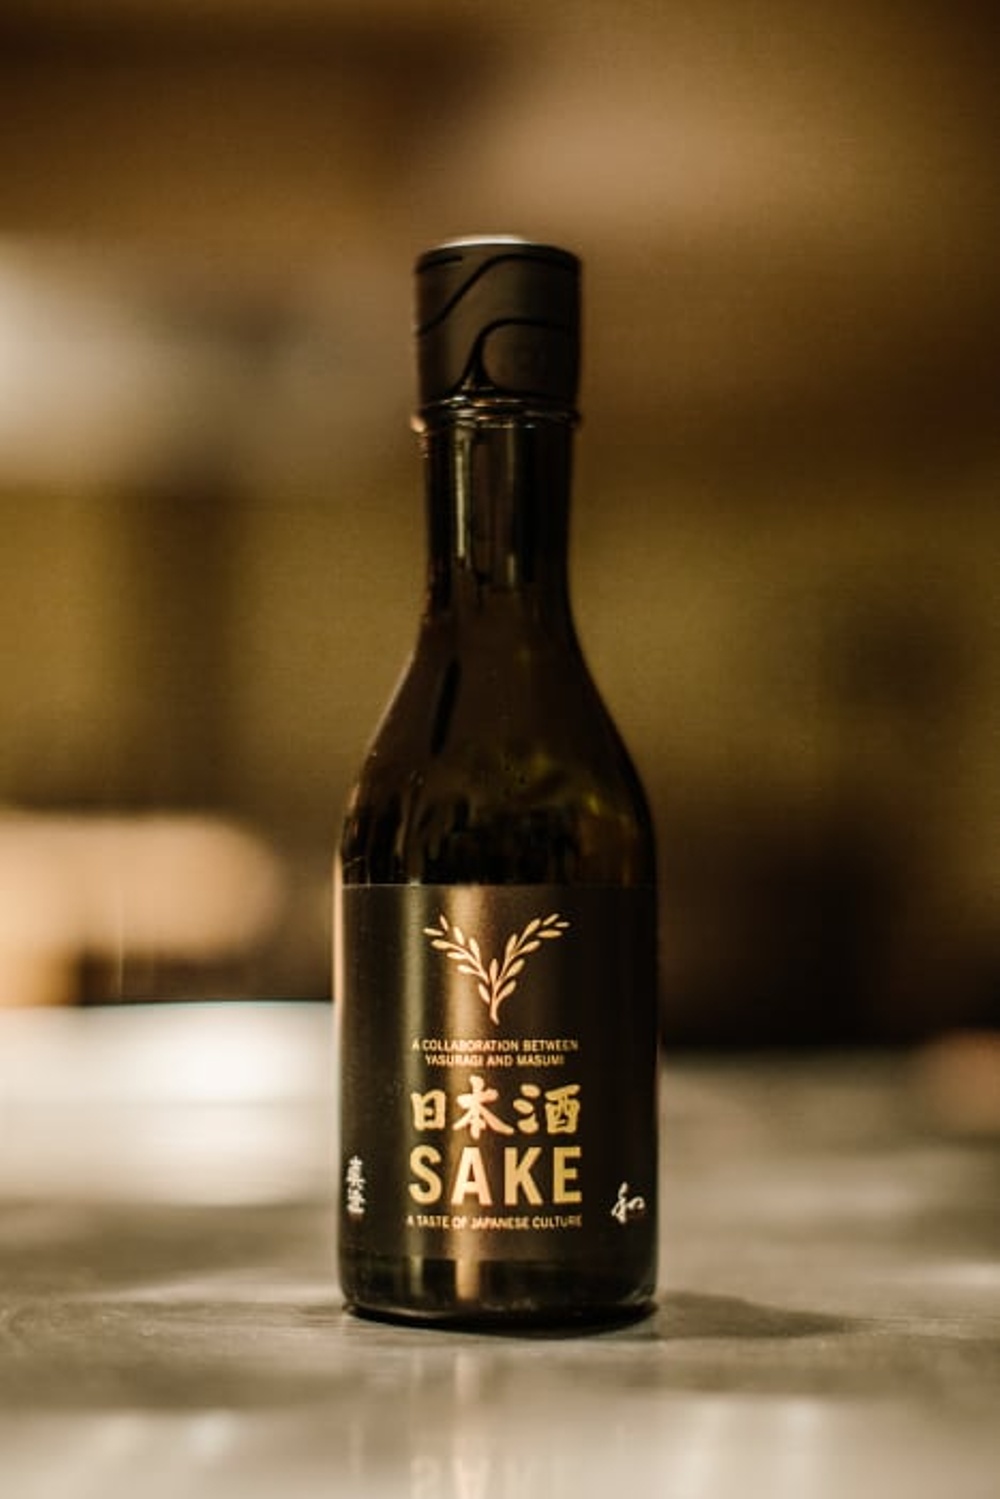 Sake served at the Sake Bar at Yasuragi. 

Flaska Sake som serveras vid Sake Bar på Yasuragi.